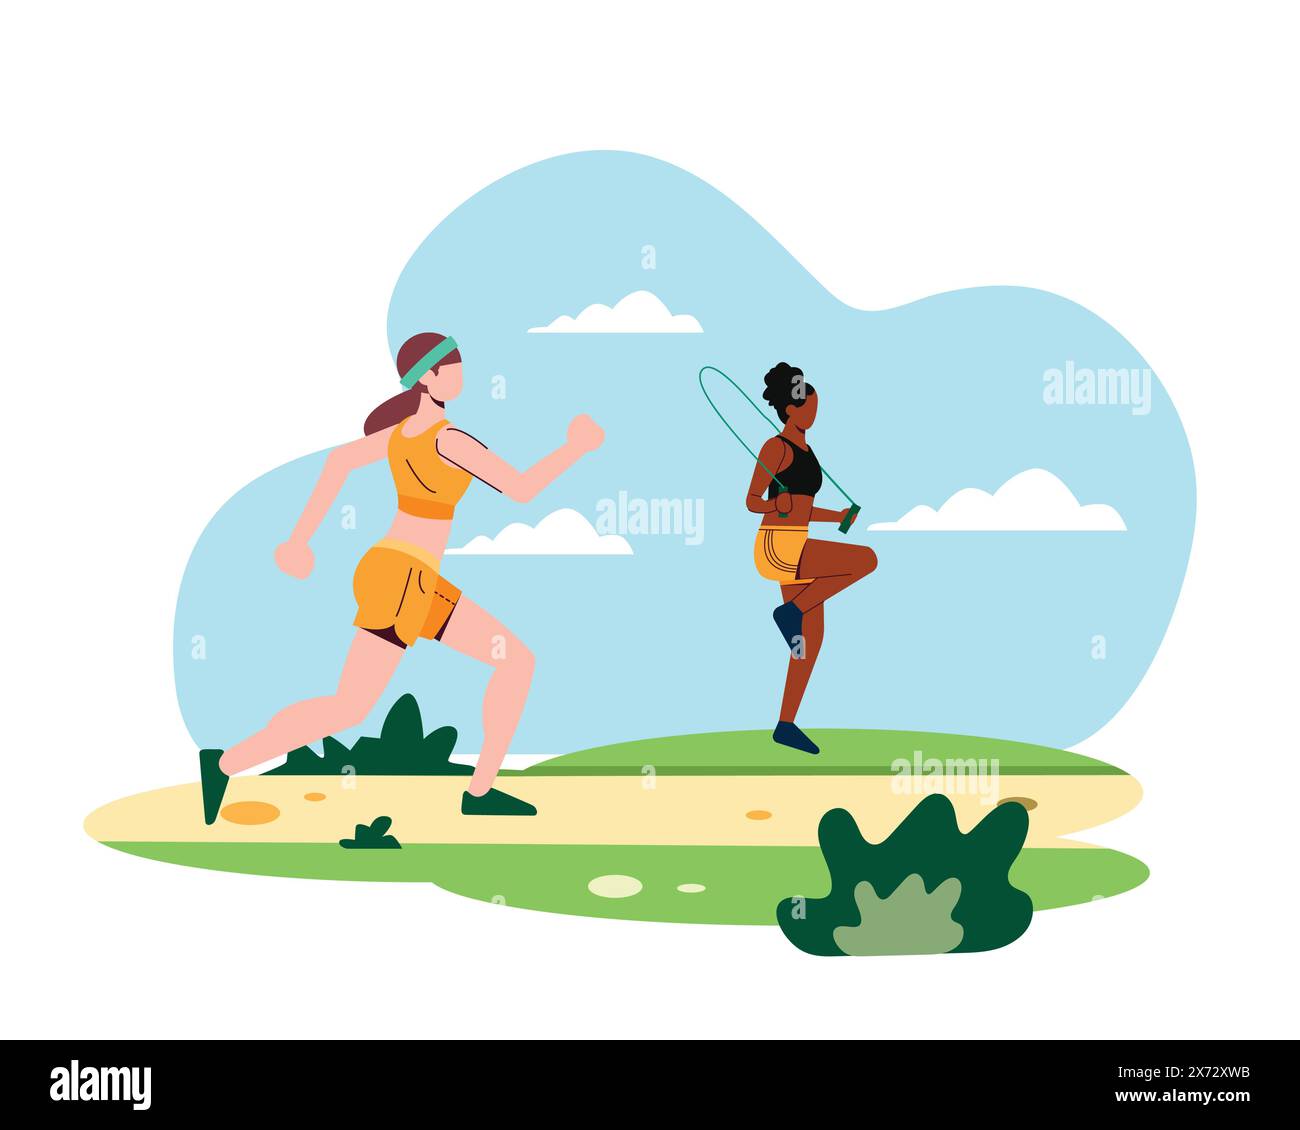 Zwei junge Frauen, eine beim Joggen und die andere beim Seilspringen im Park. Sport- und Erholungskonzept. Einfaches flaches Design für gesundes Leben veranschaulichen Stock Vektor